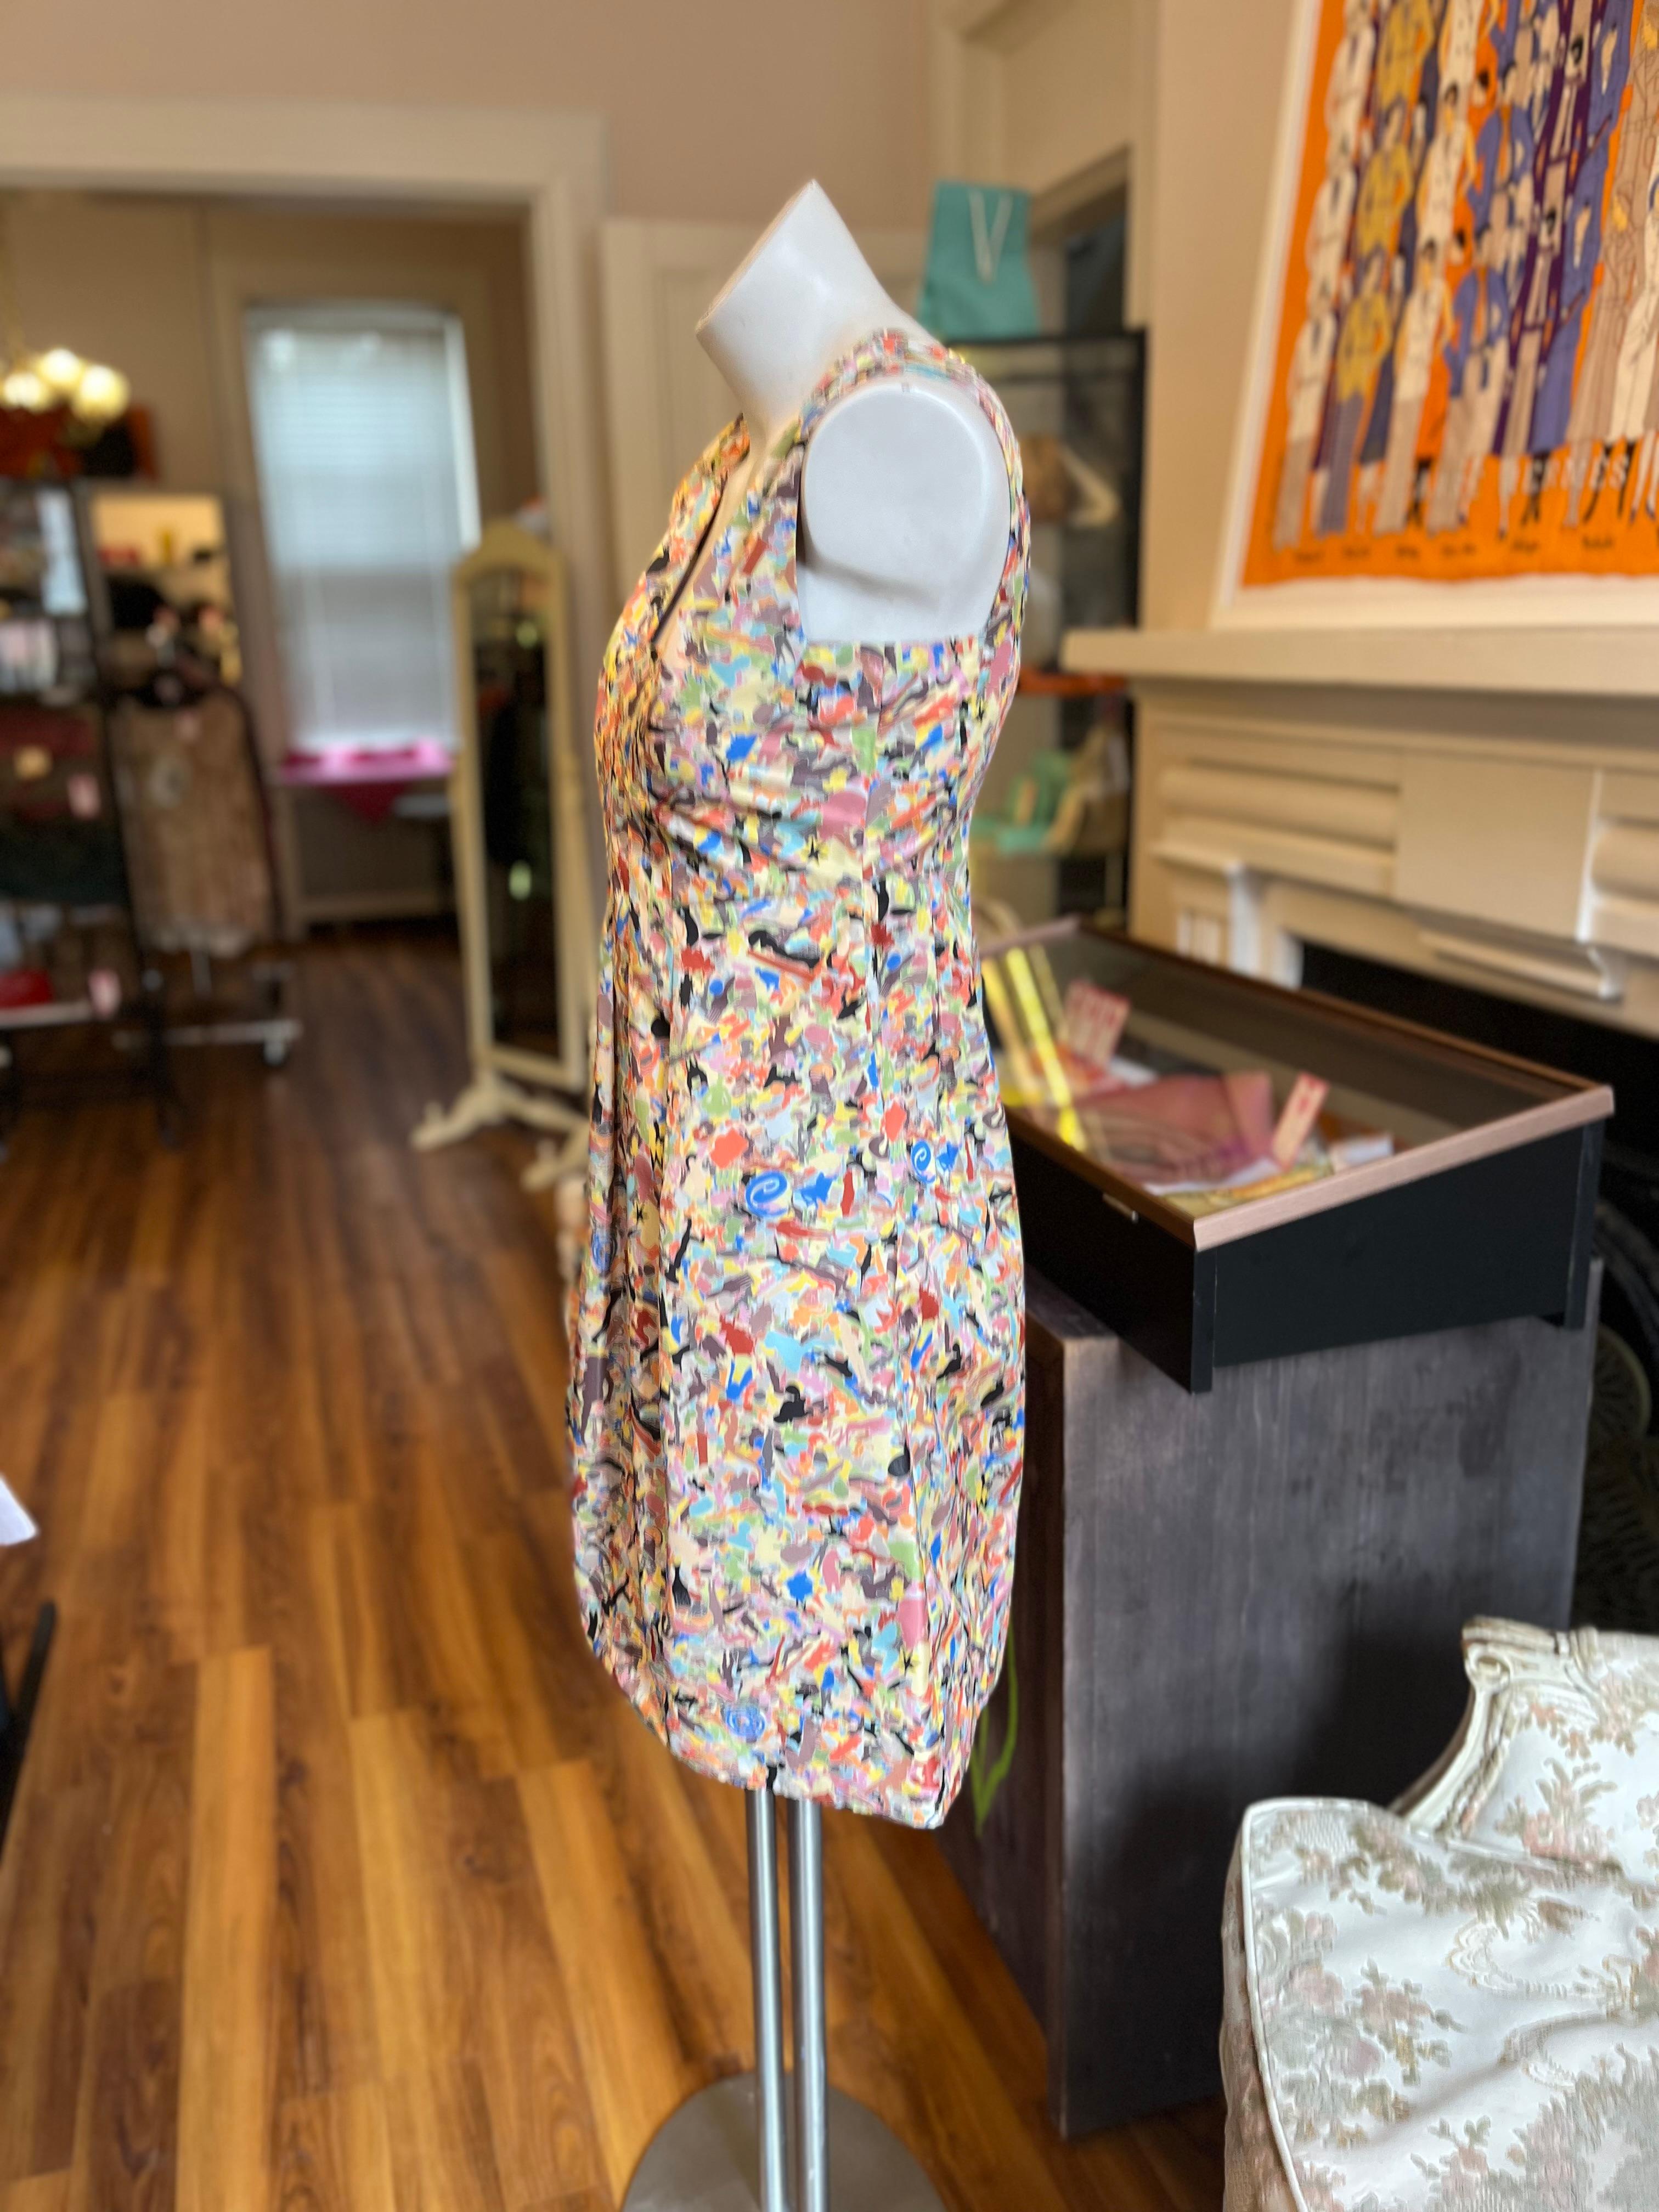 Das in Italien gefertigte Kleid ist ein wunderschönes Frühlings-/Sommerkleid aus Polyester und Seide. Ein für Jil Sander ungewöhnliches abstraktes Muster, das dennoch einen klassischen Look hat. Ja, es gibt Taschen!
Bei diesem Kleid behält Jil